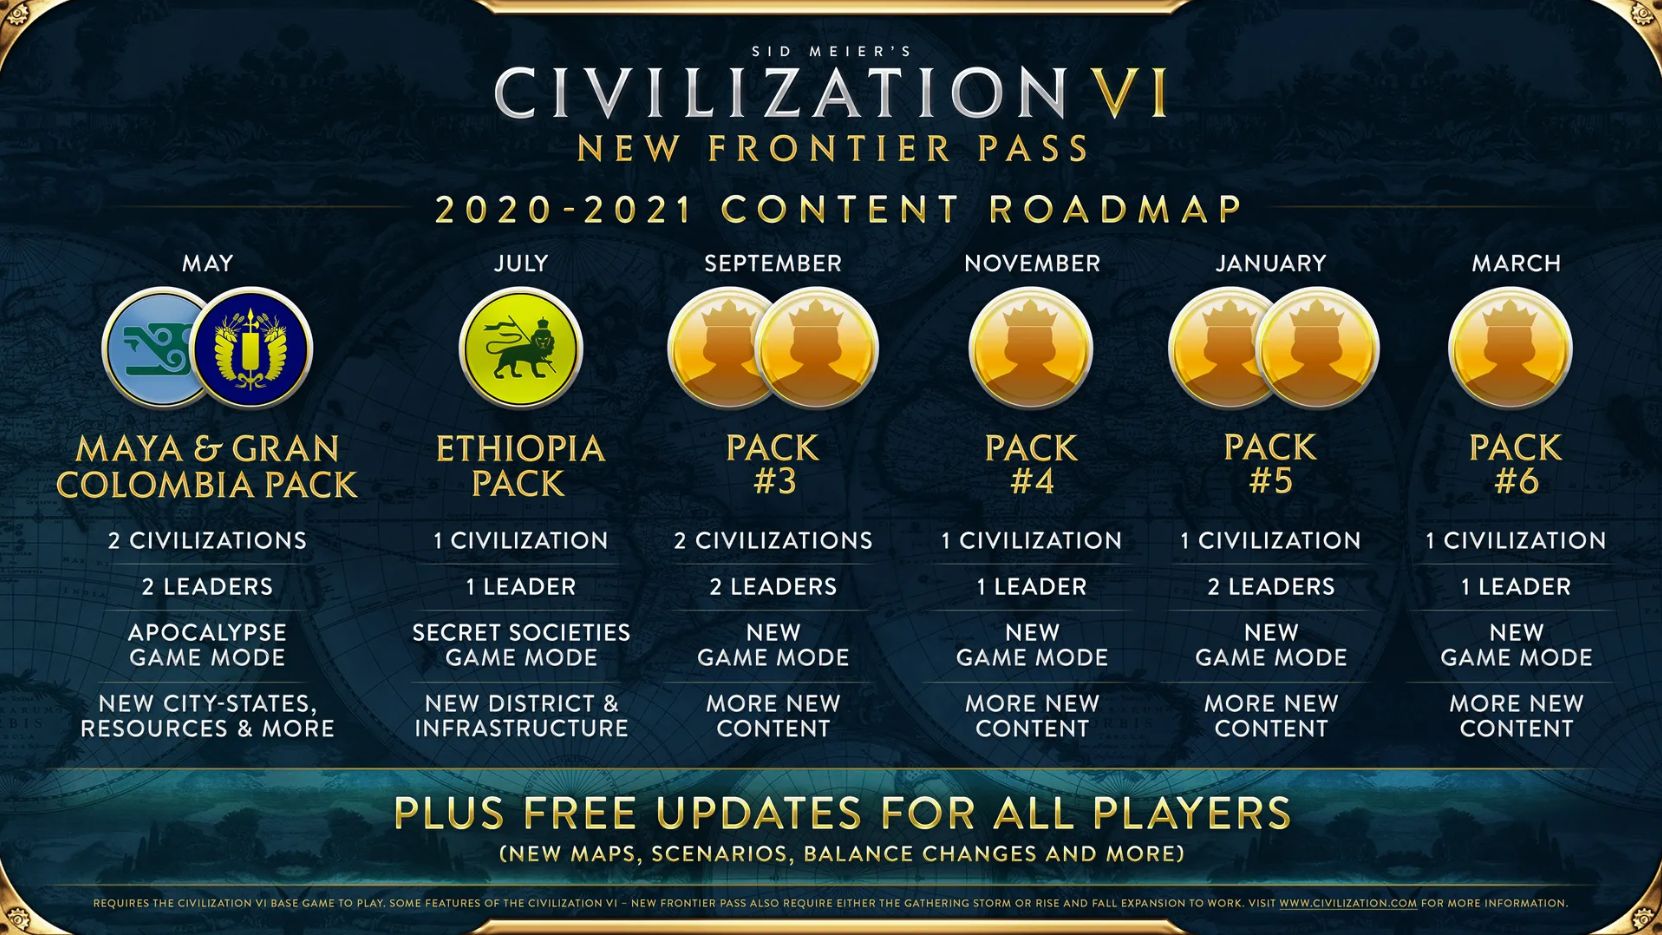 Цикл New Frontier Pass для Civilization VI. Источник: civilization.com